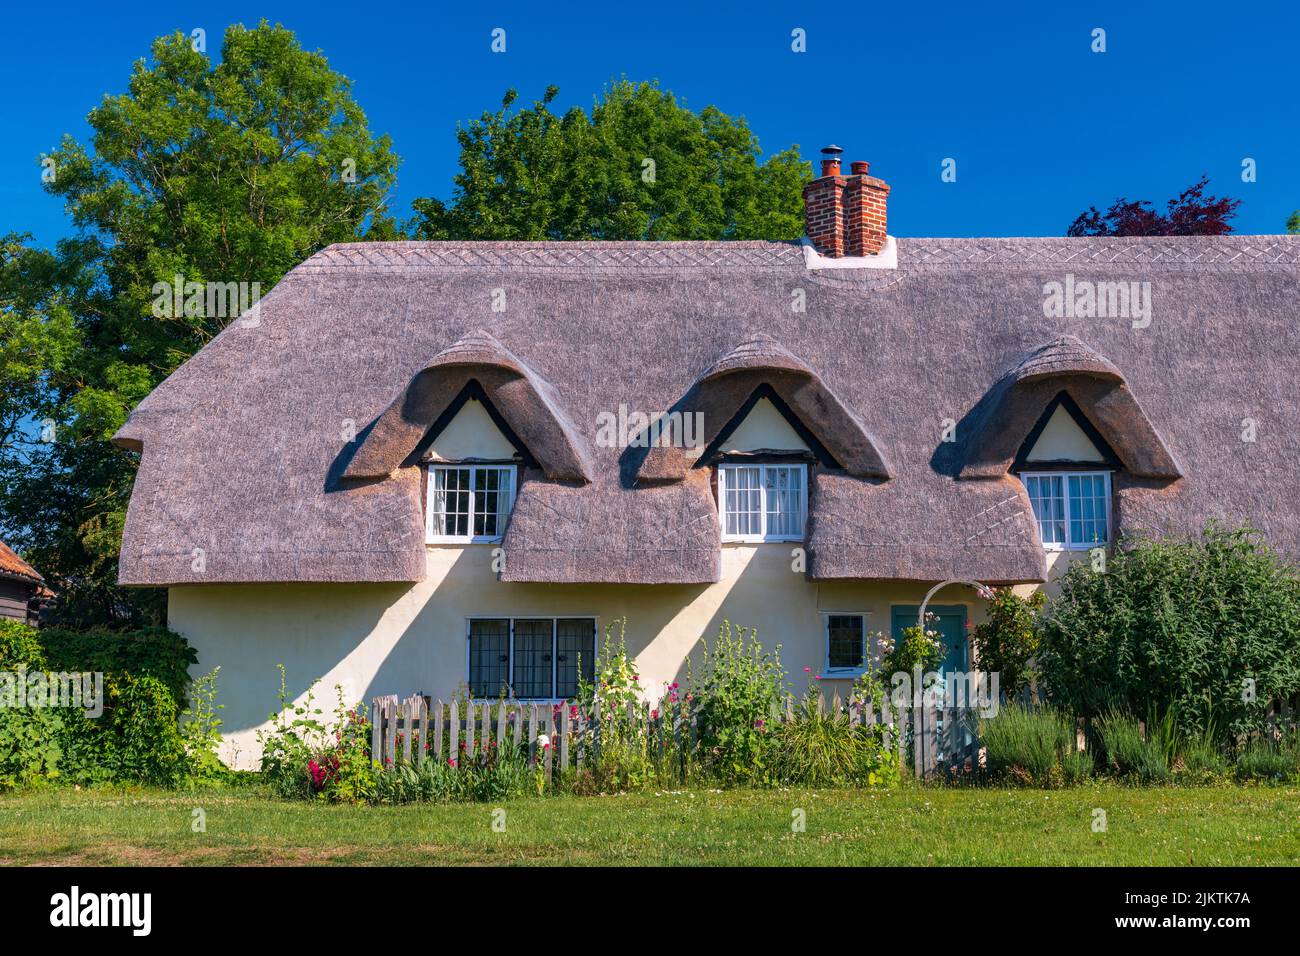 UK, England, Cambridgeshire, Barrington, Traditional thatched cottage Stock Photo